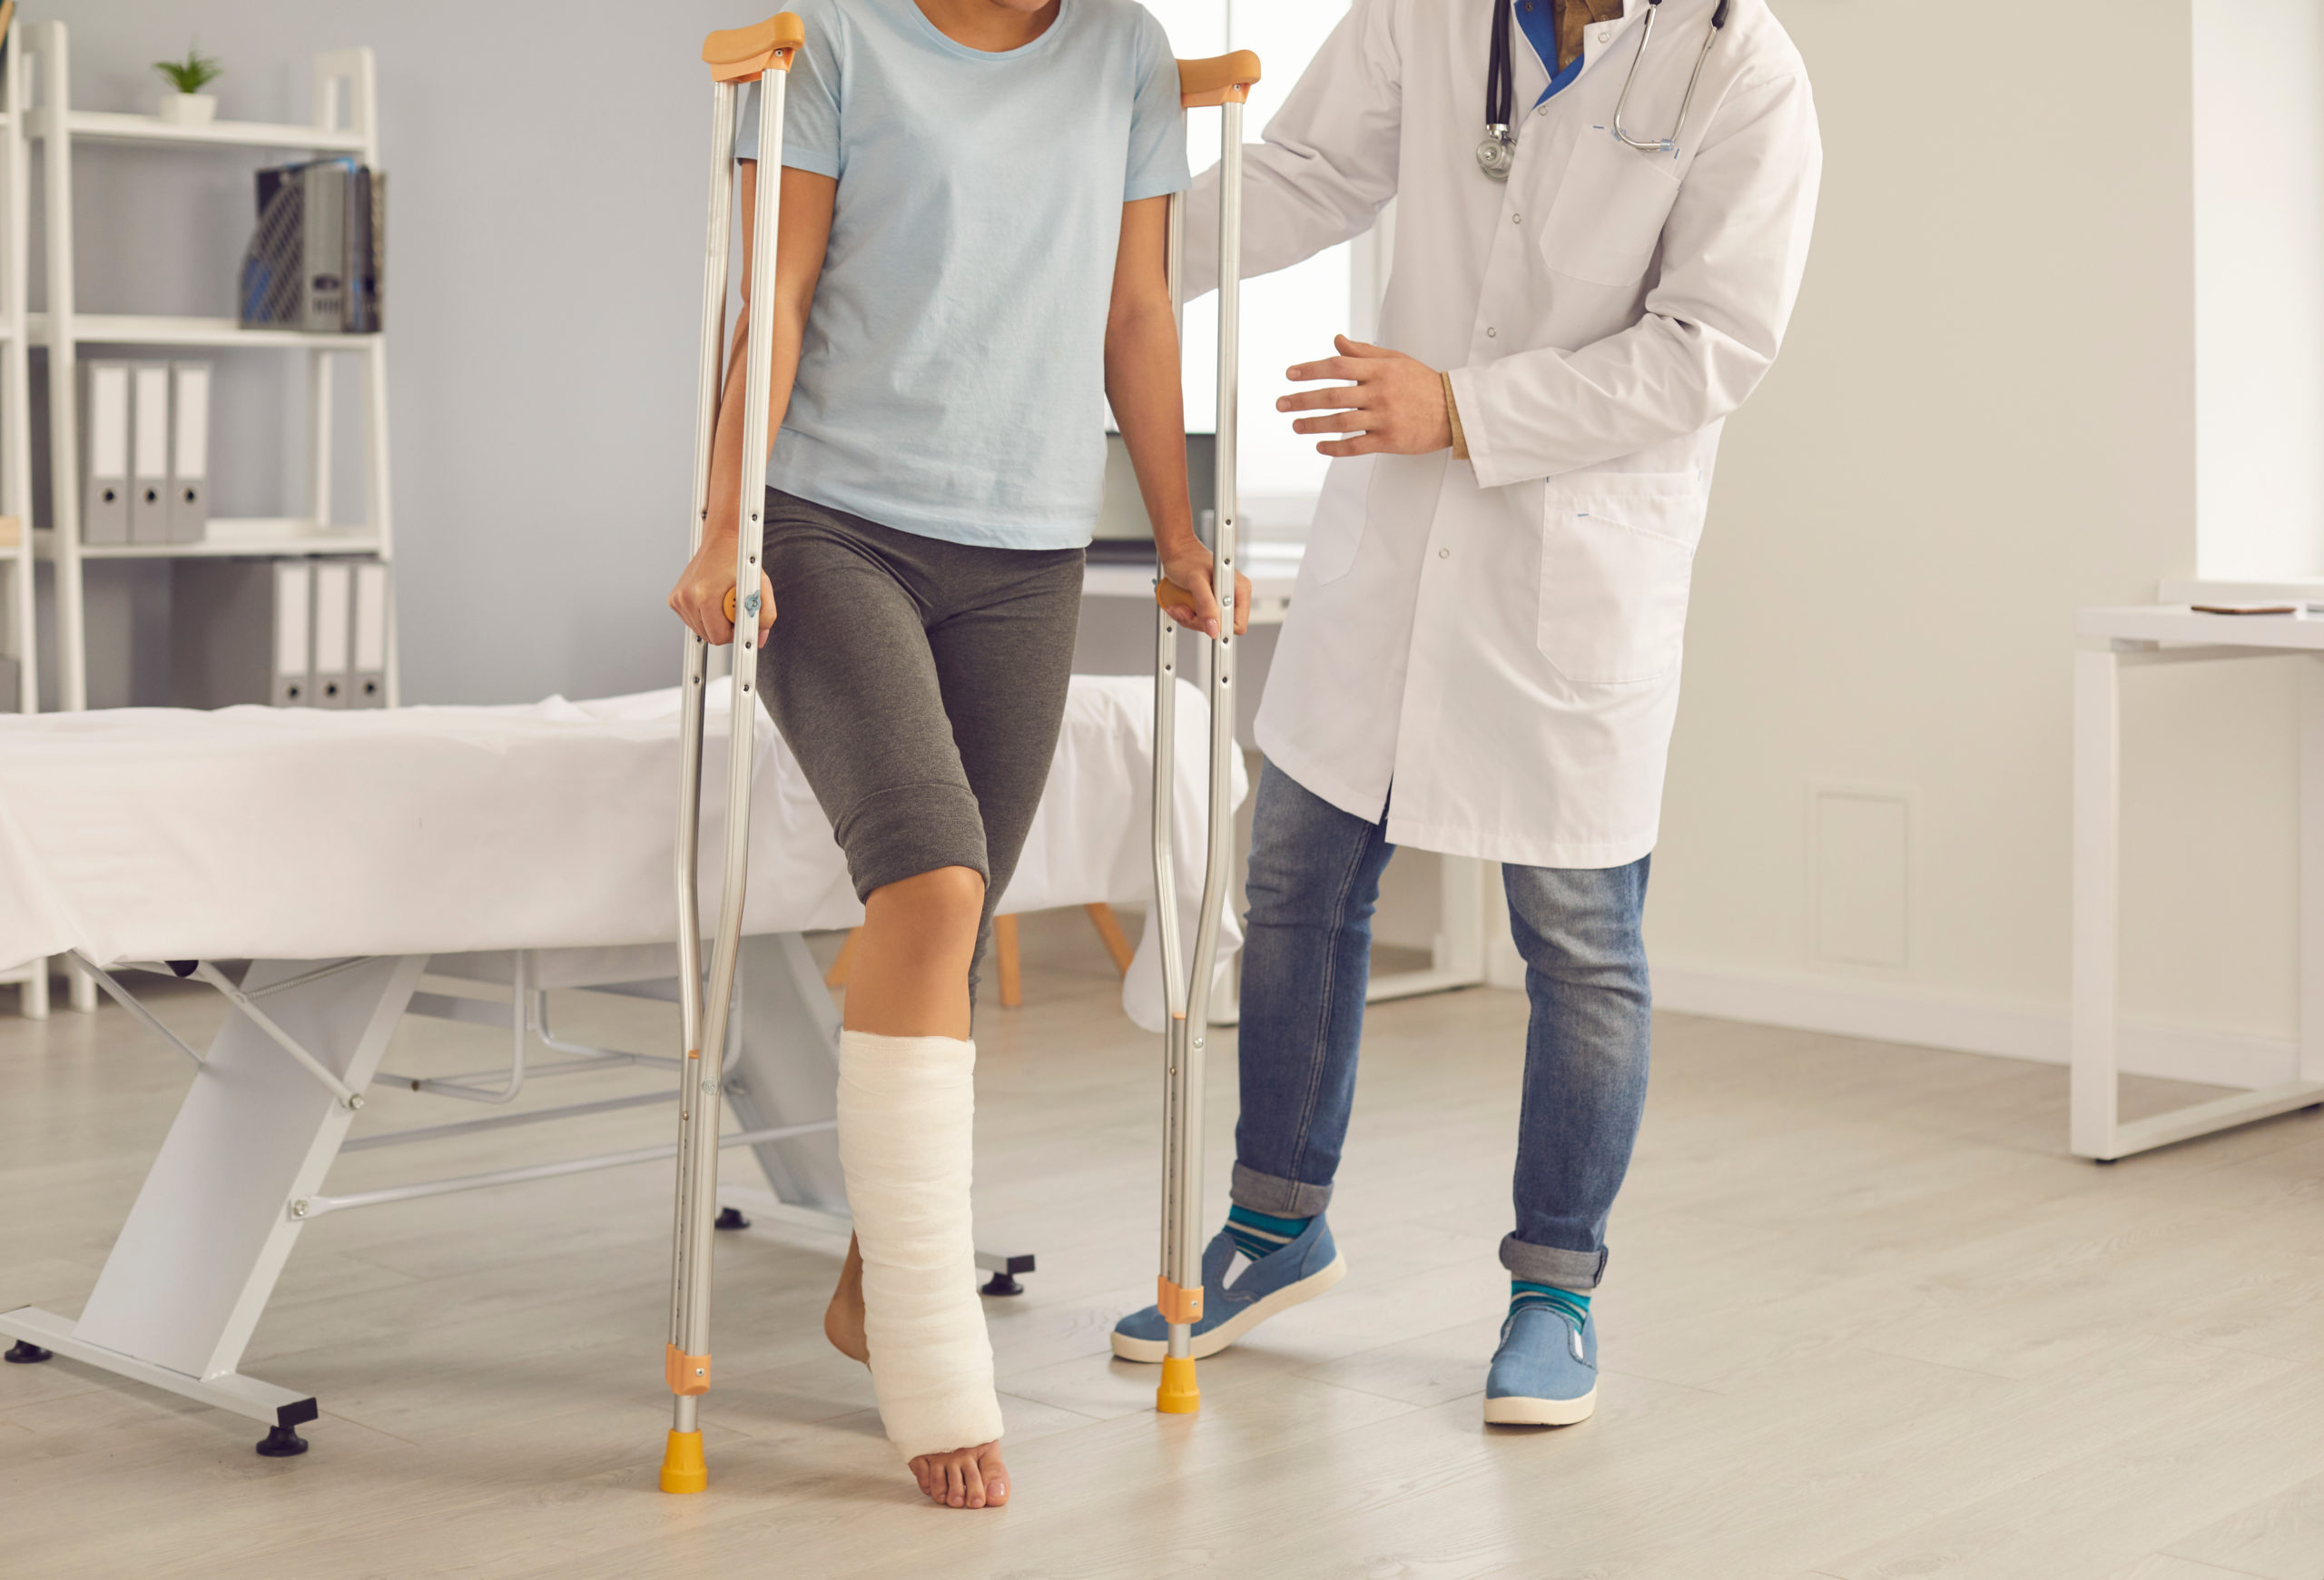 patient with broken leg